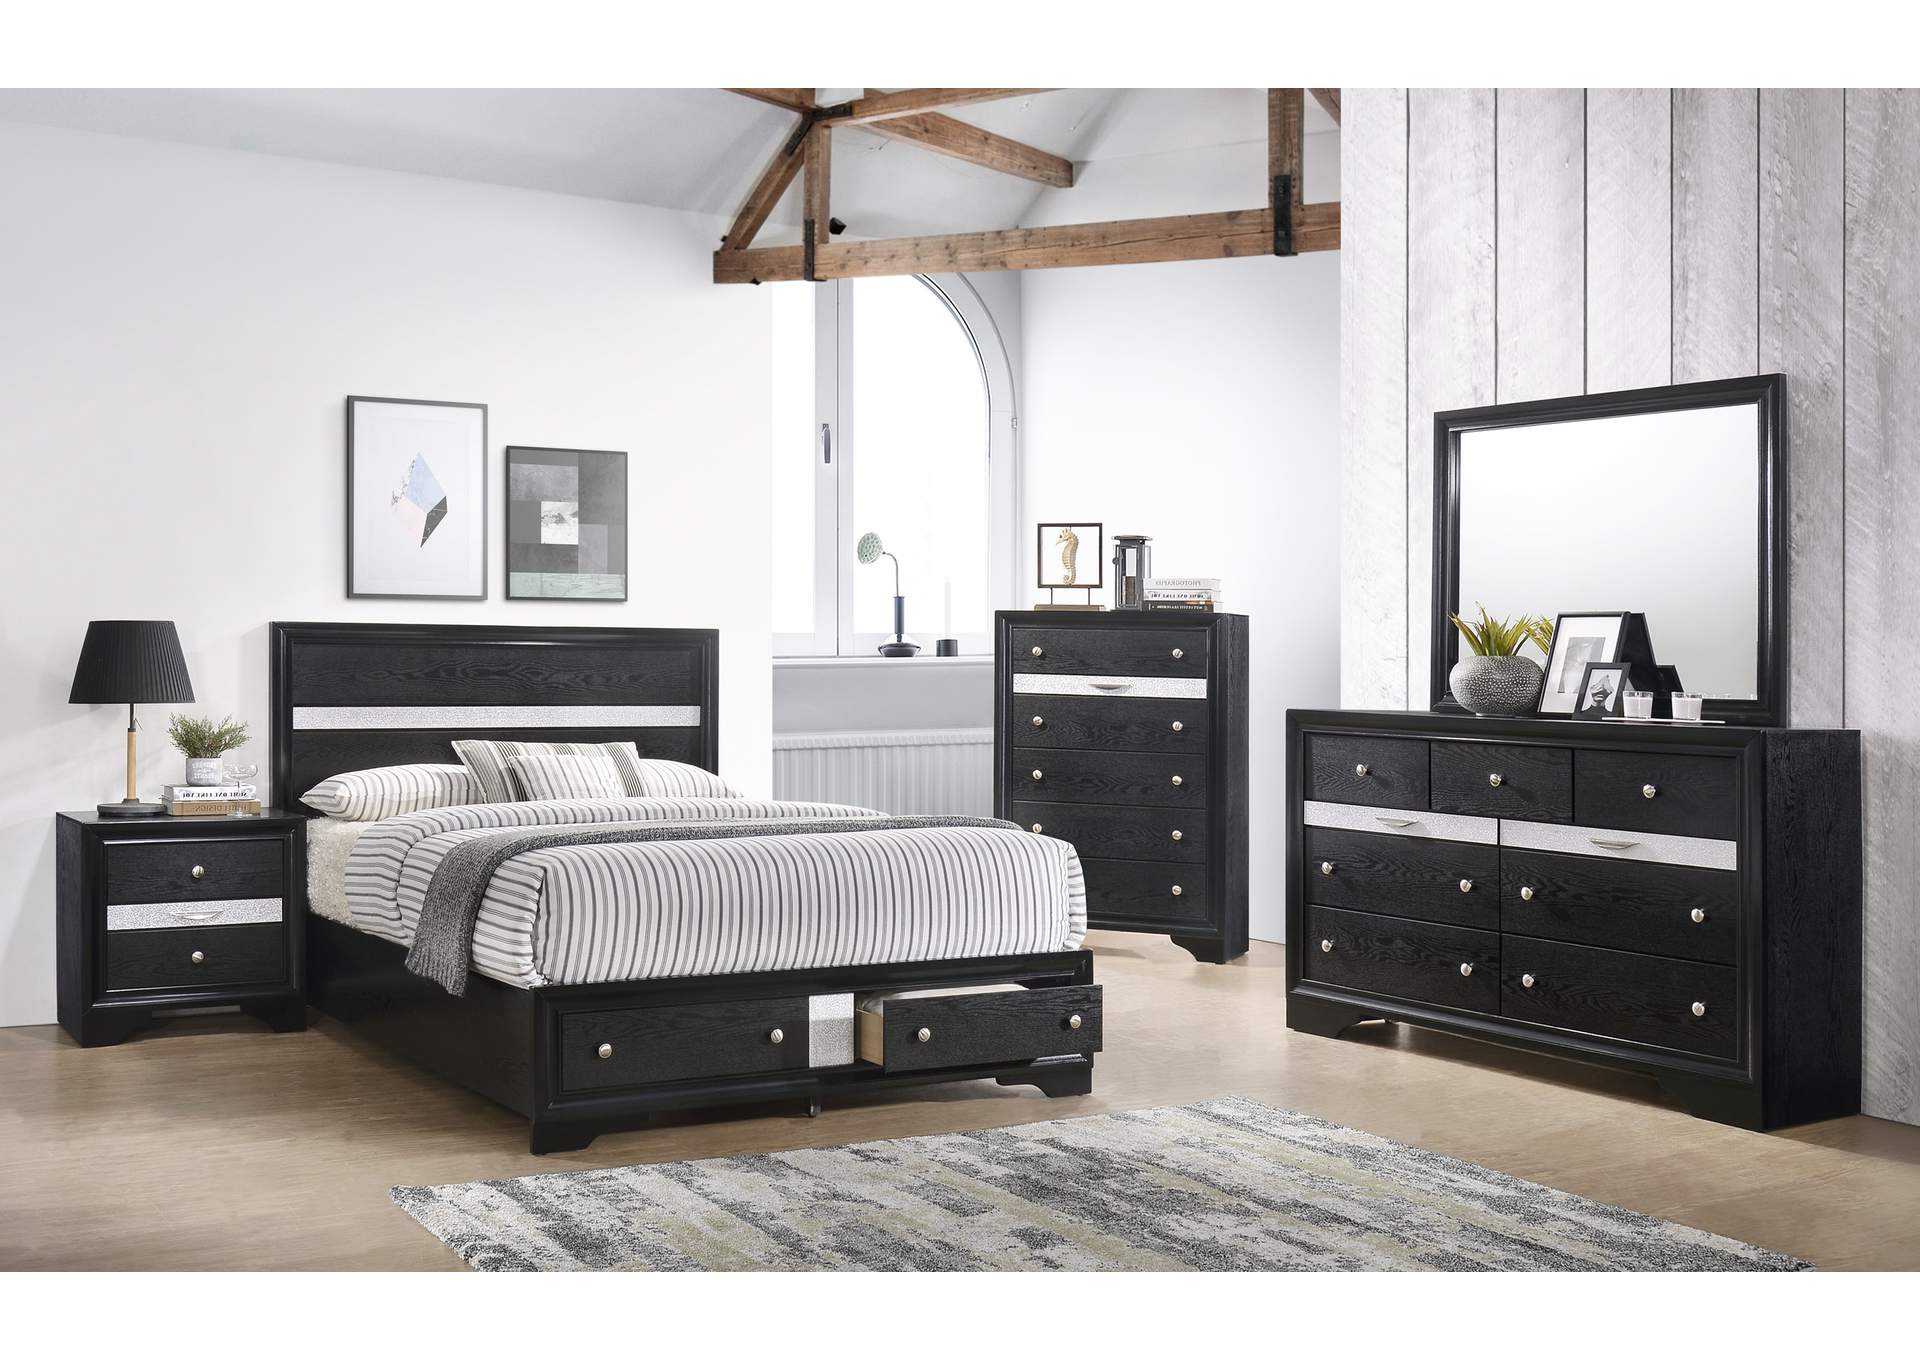 Regata Black King Bed W/ Dresser, Mirror, Nightstand, Chest